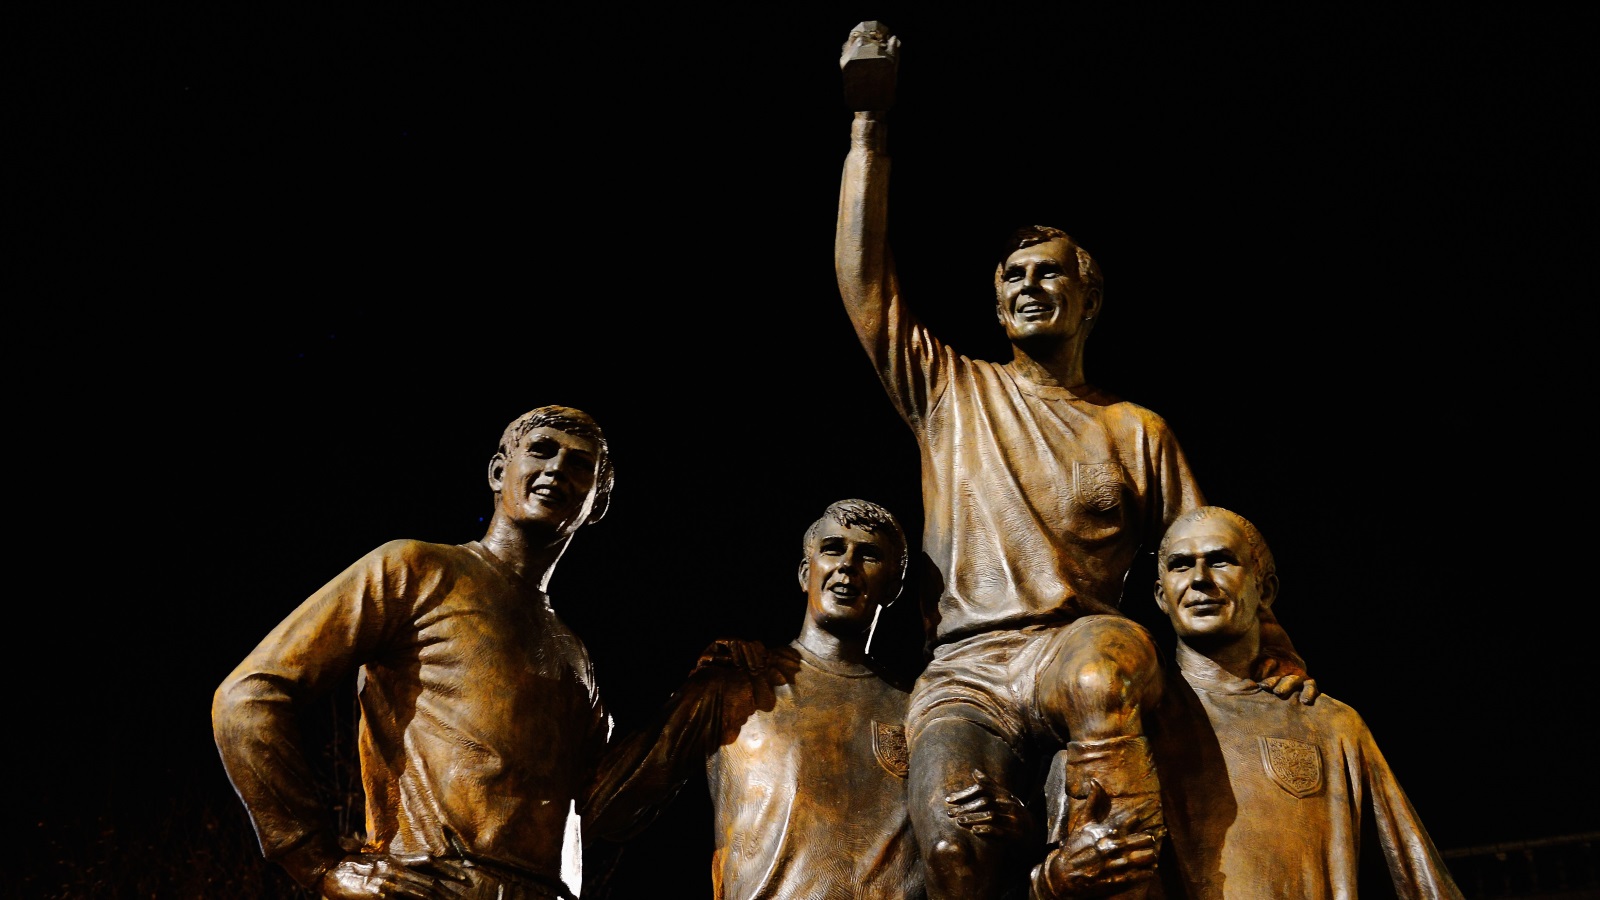 تمثال الأبطال.. الذي يجمع بوبي مور، جوف هرست، مارتن بيترز وراي ويلسون، الذين أحرزوا لقب كأس العالم عام 1966 (غيتي)